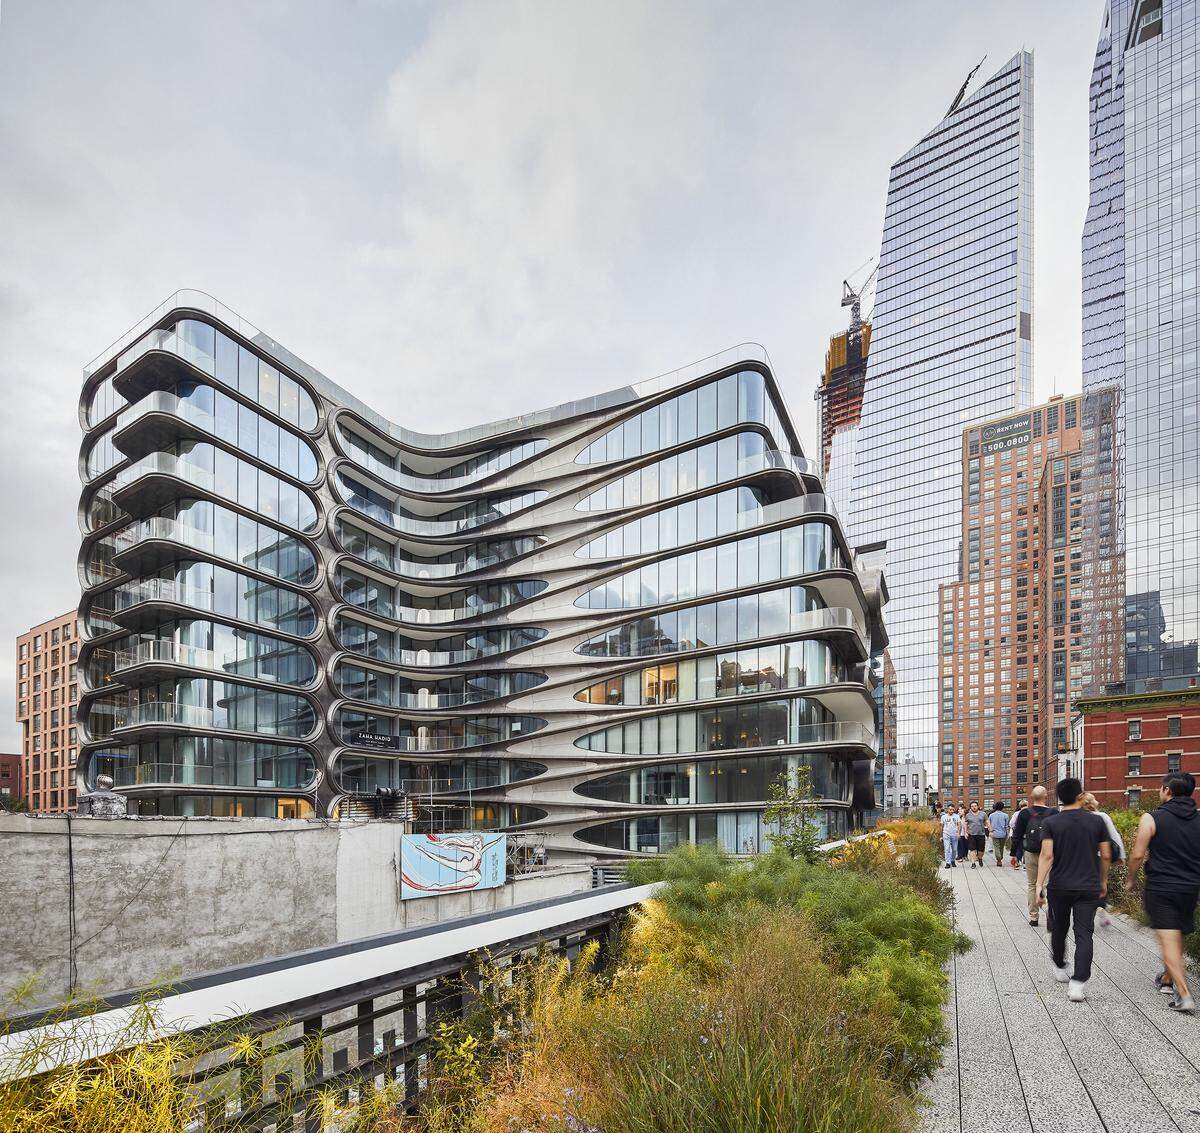 Das elfstöckige Gebäude beherbergt 39 Wohnungen. Der Musiker Sting zählt laut New York Post zu den prominentesten Bewohnern des luxuriösen Wohnhauses an der New Yorker High Line.